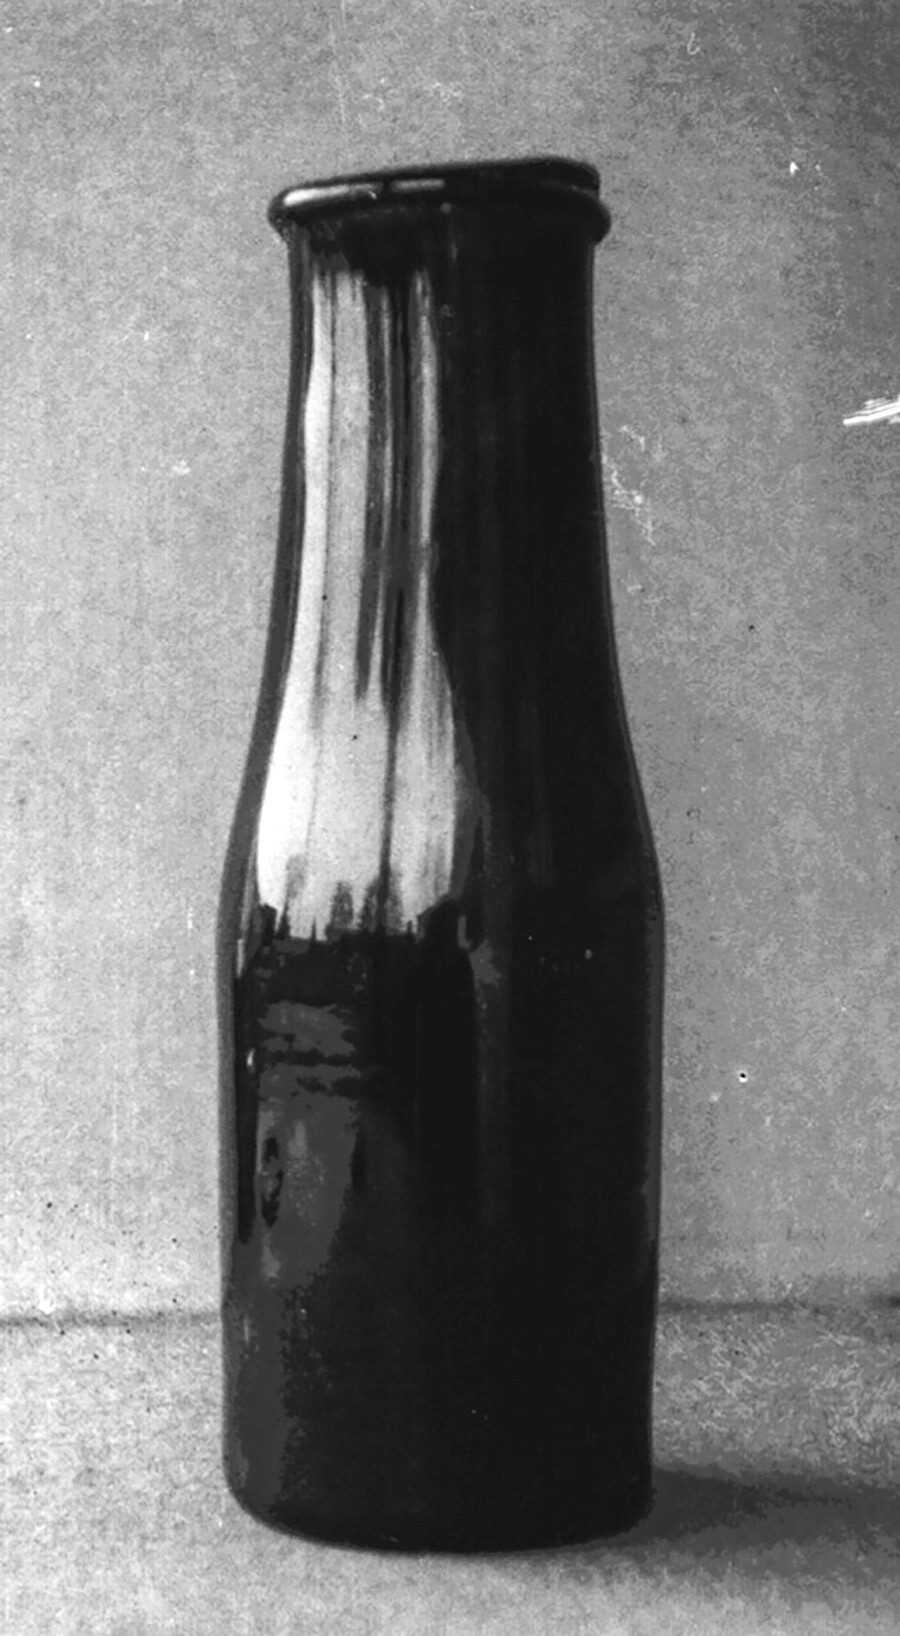 Николя Аппер изобрел метод консервации пищи в стеклянных бутылках